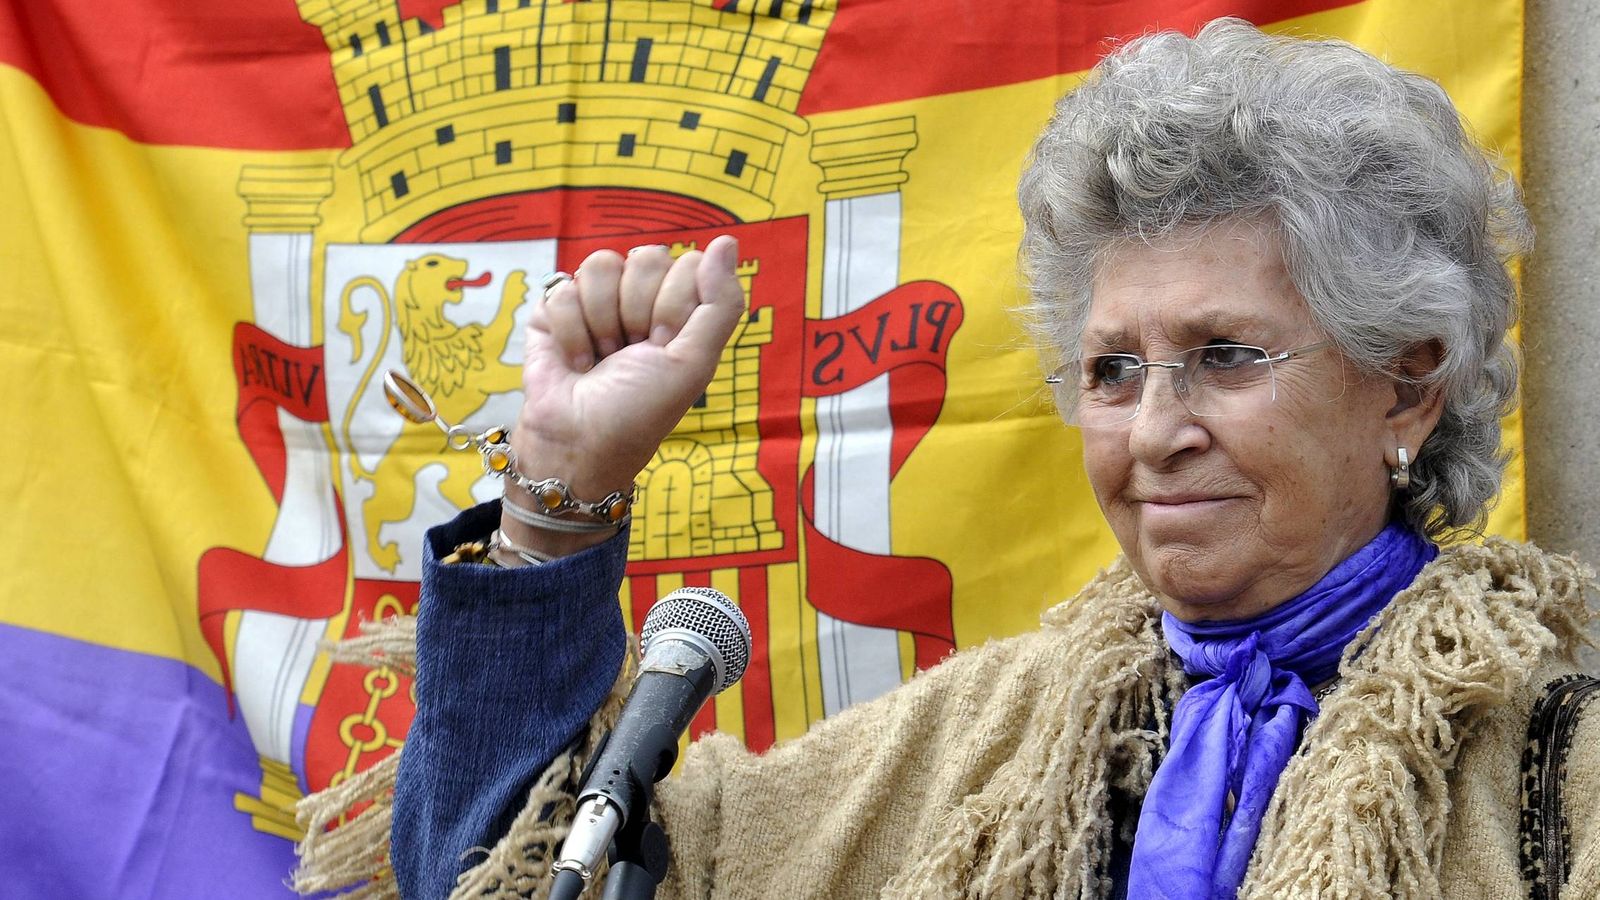 Foto: Pilar Bardem levanta el puño delante de una bandera de la Segunda República Española en un acto en el cementerio de La Almudena se recordó a los republicanos fusilados, en el setenta aniversario de la entrada de las tropas franquistas en Madrid. EFE